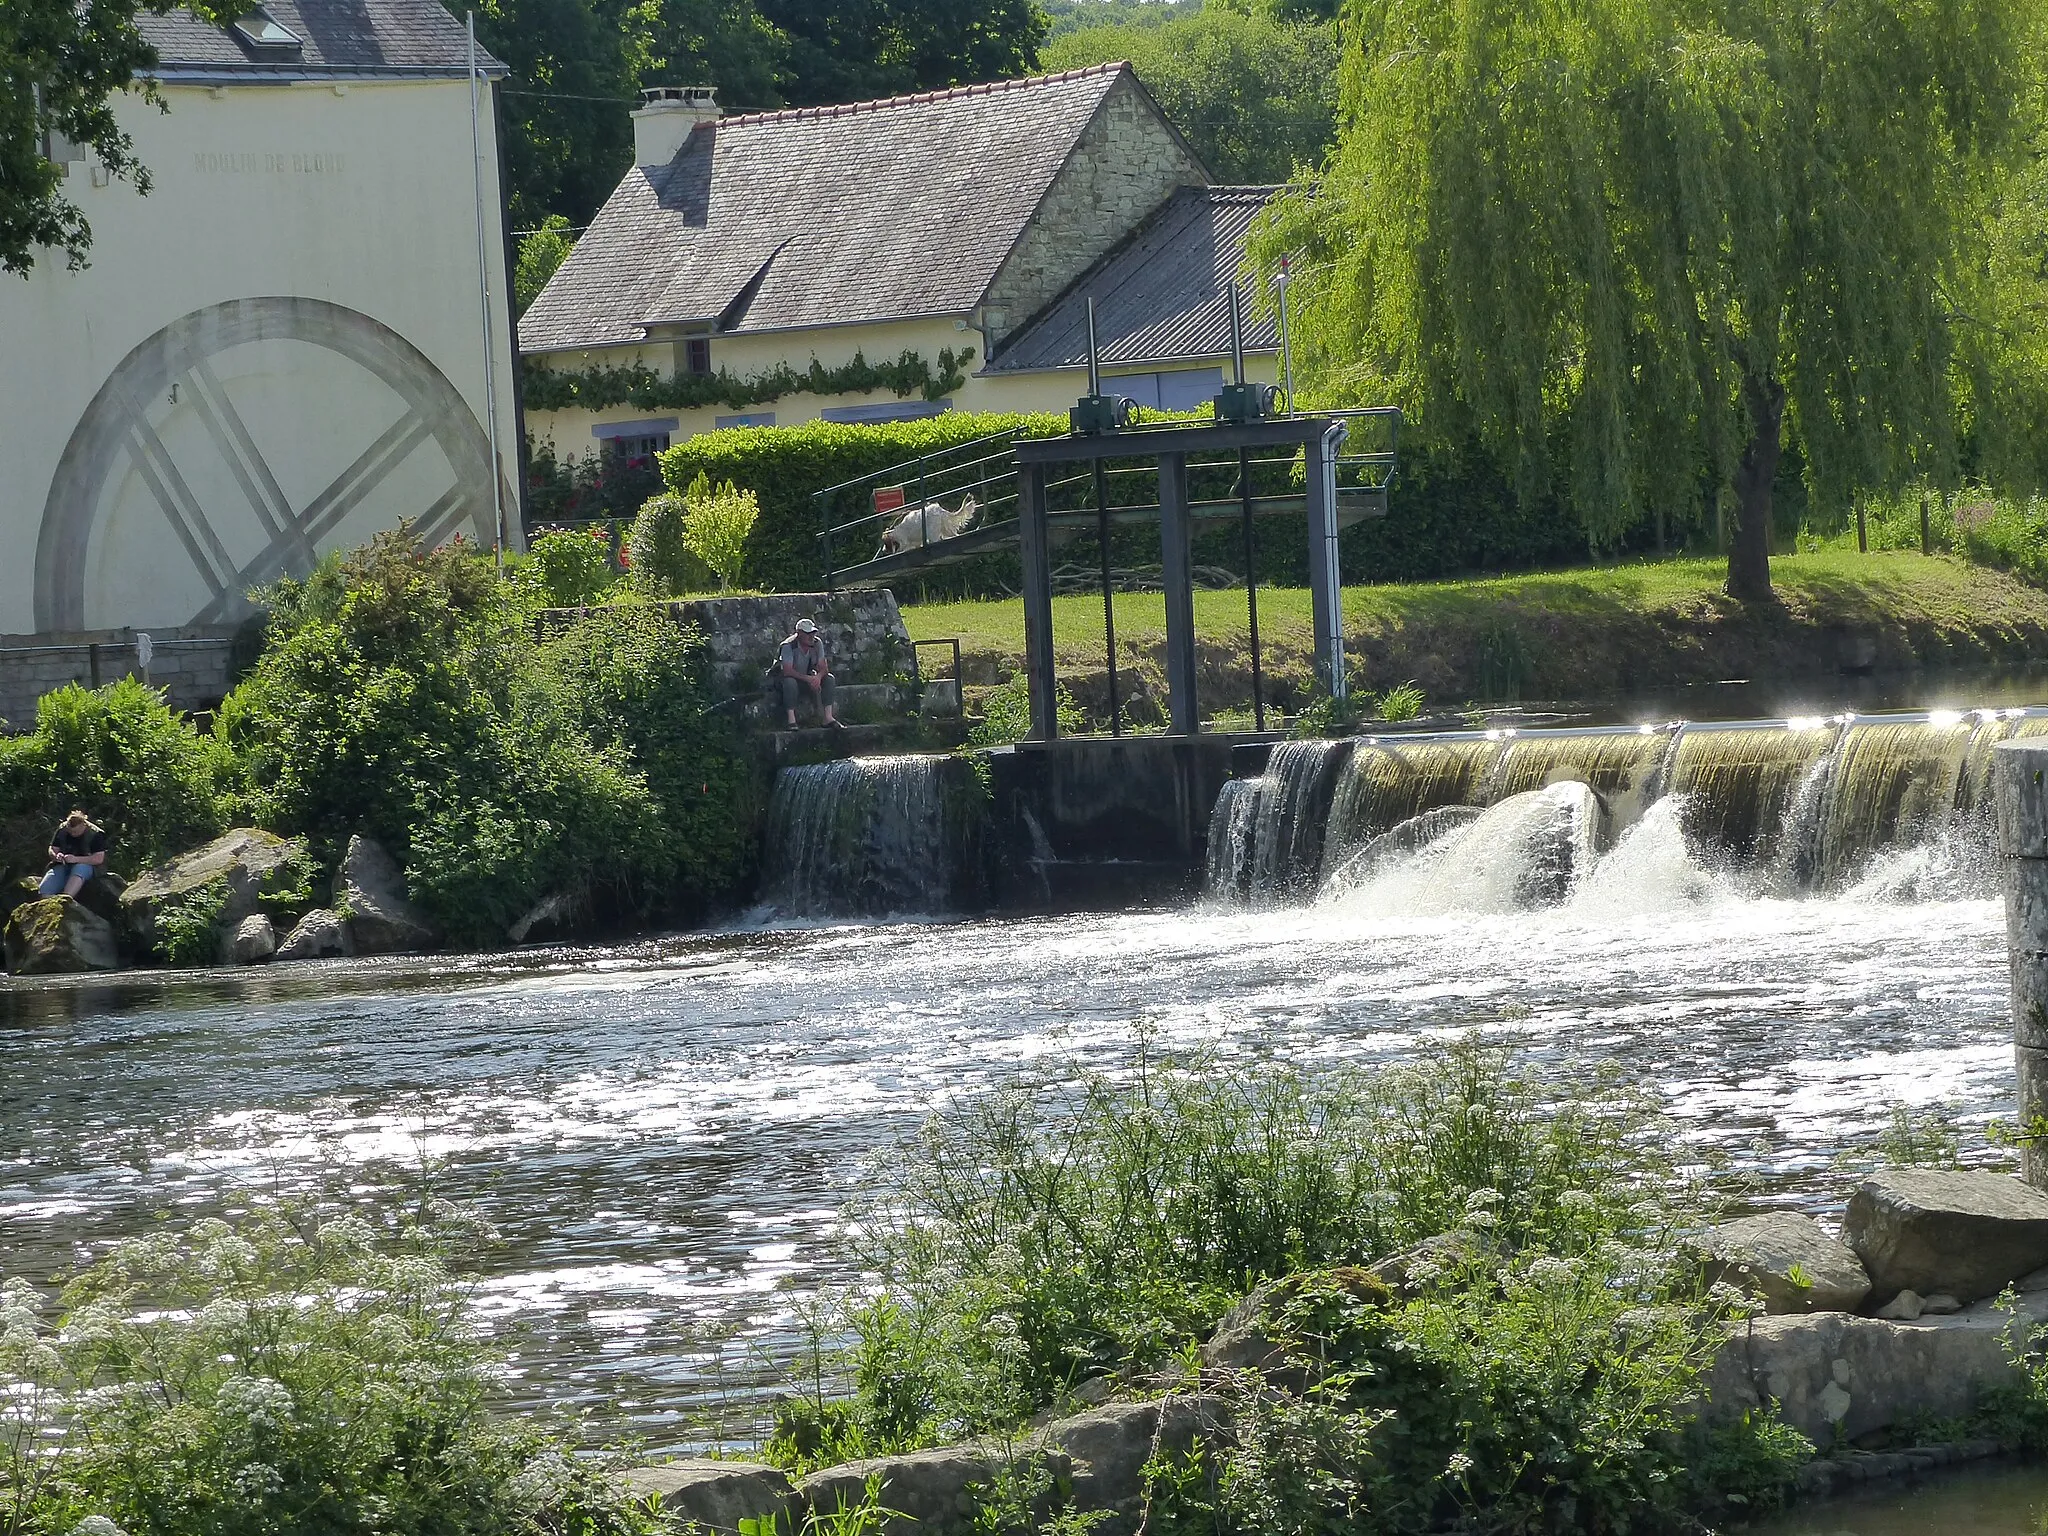 Photo showing: Moulin de Blond, ancien moulin à eau du val d'Oust